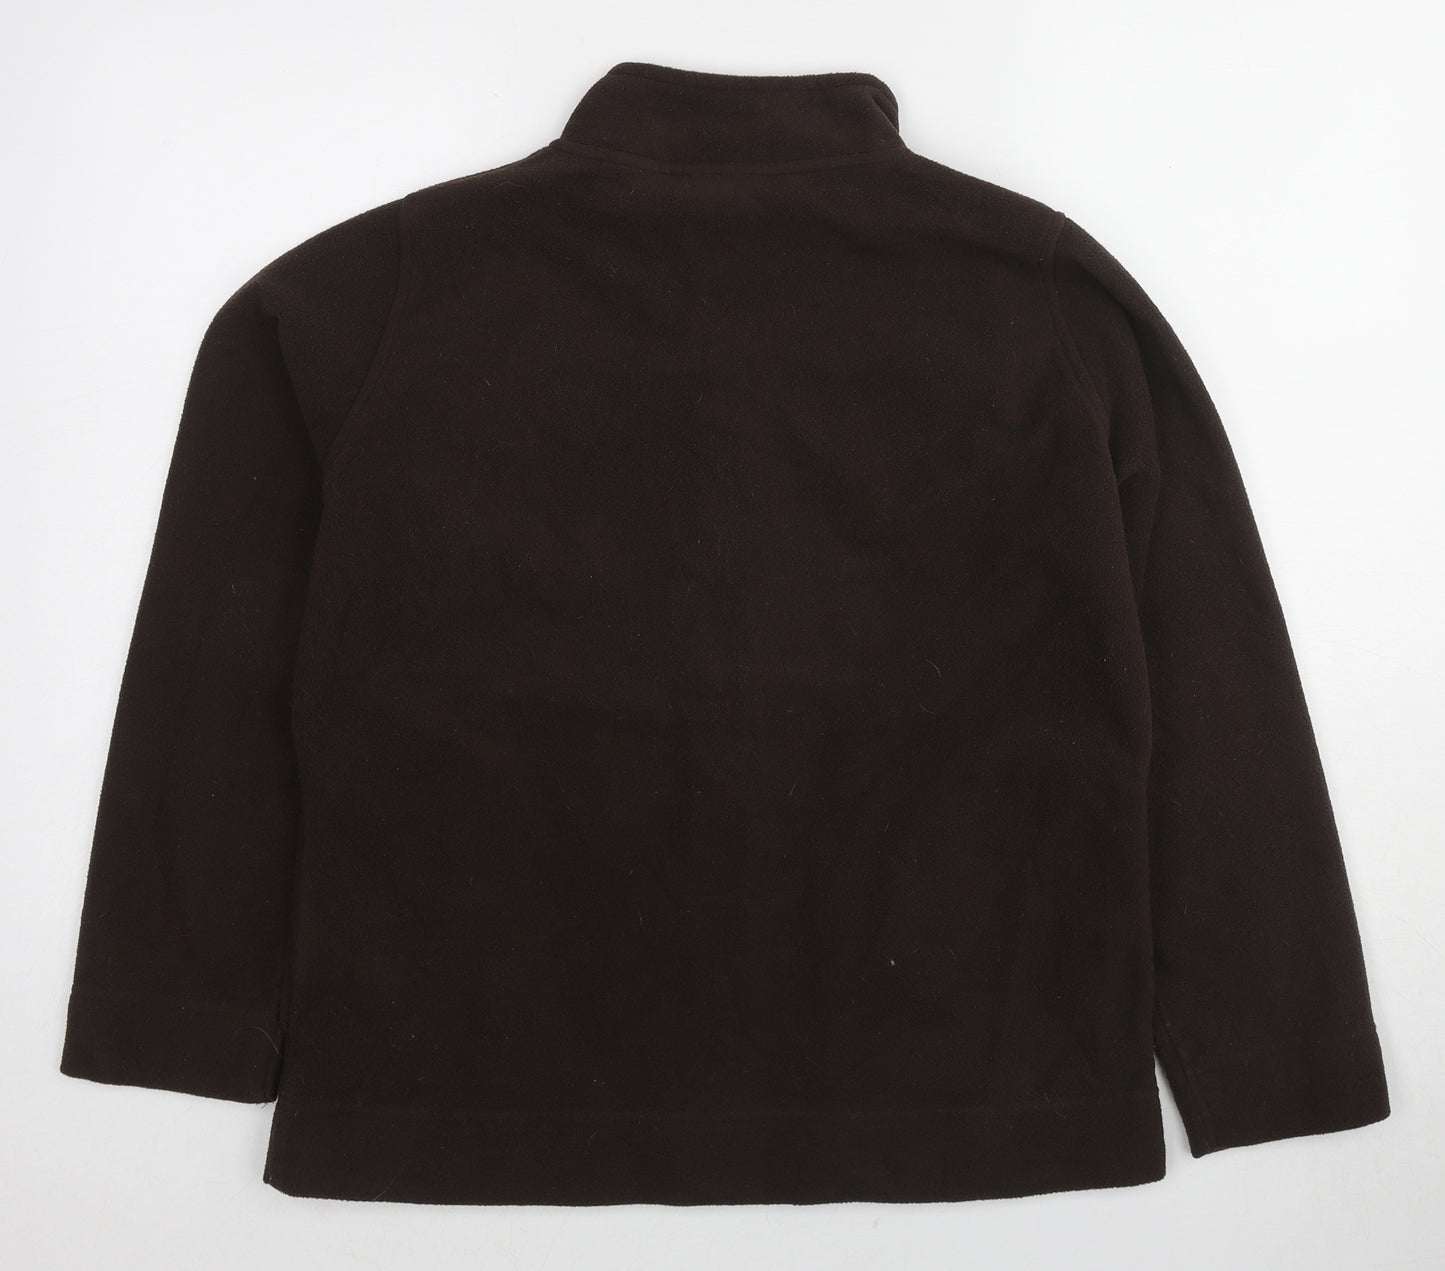 EWM Womens Brown Jacket Size 14 Zip - Size 14-16